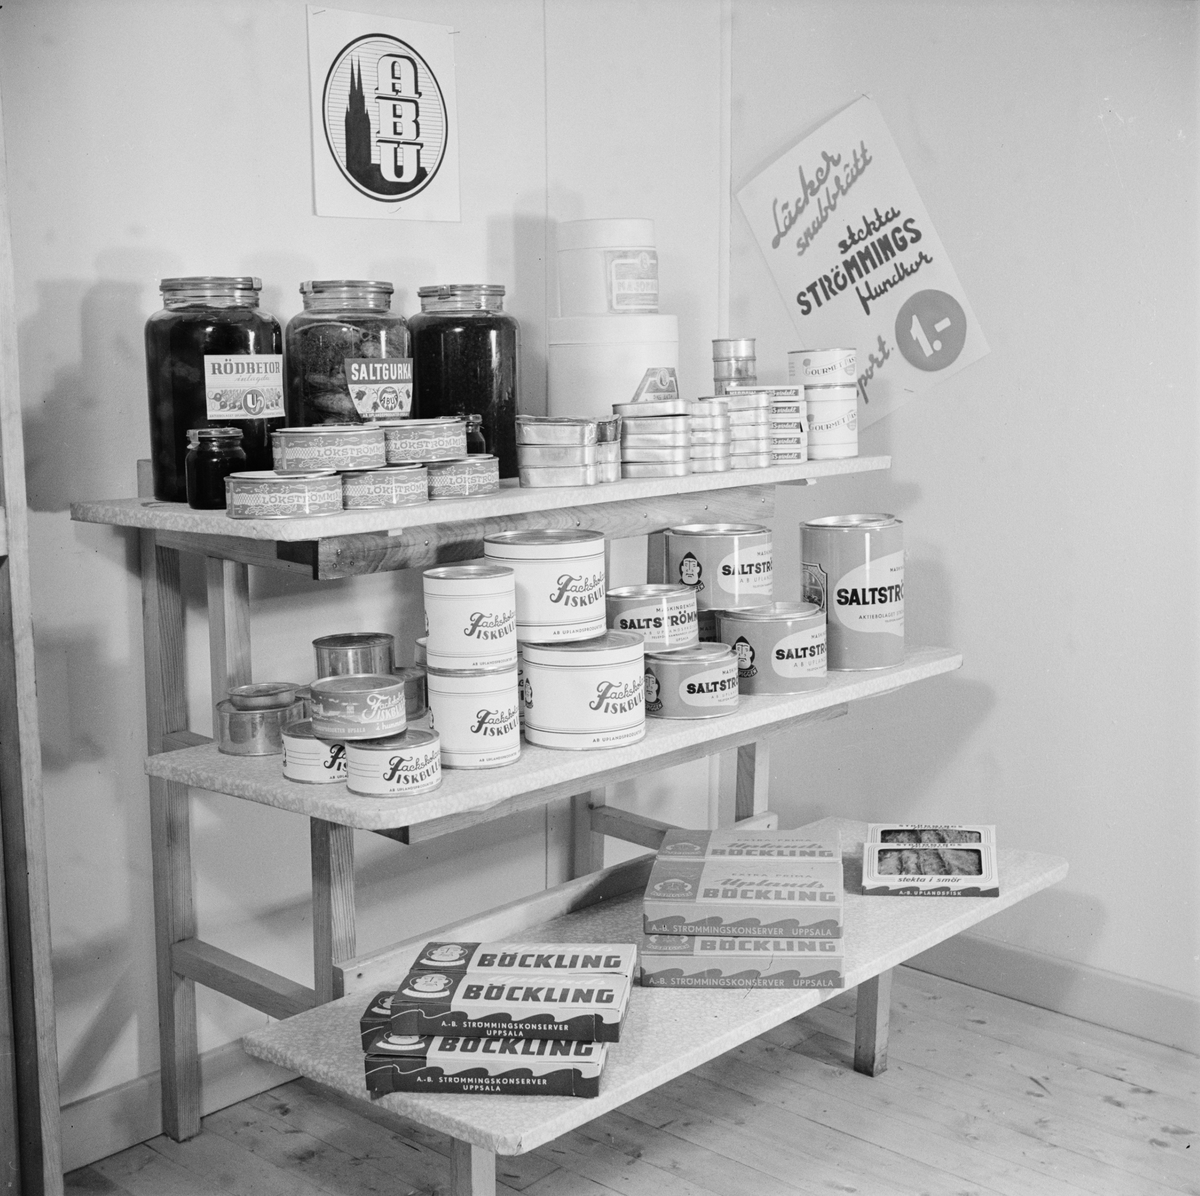 AB Uplandsprodukter, pressvisning, hylla med produkter, Uppsala oktober 1946